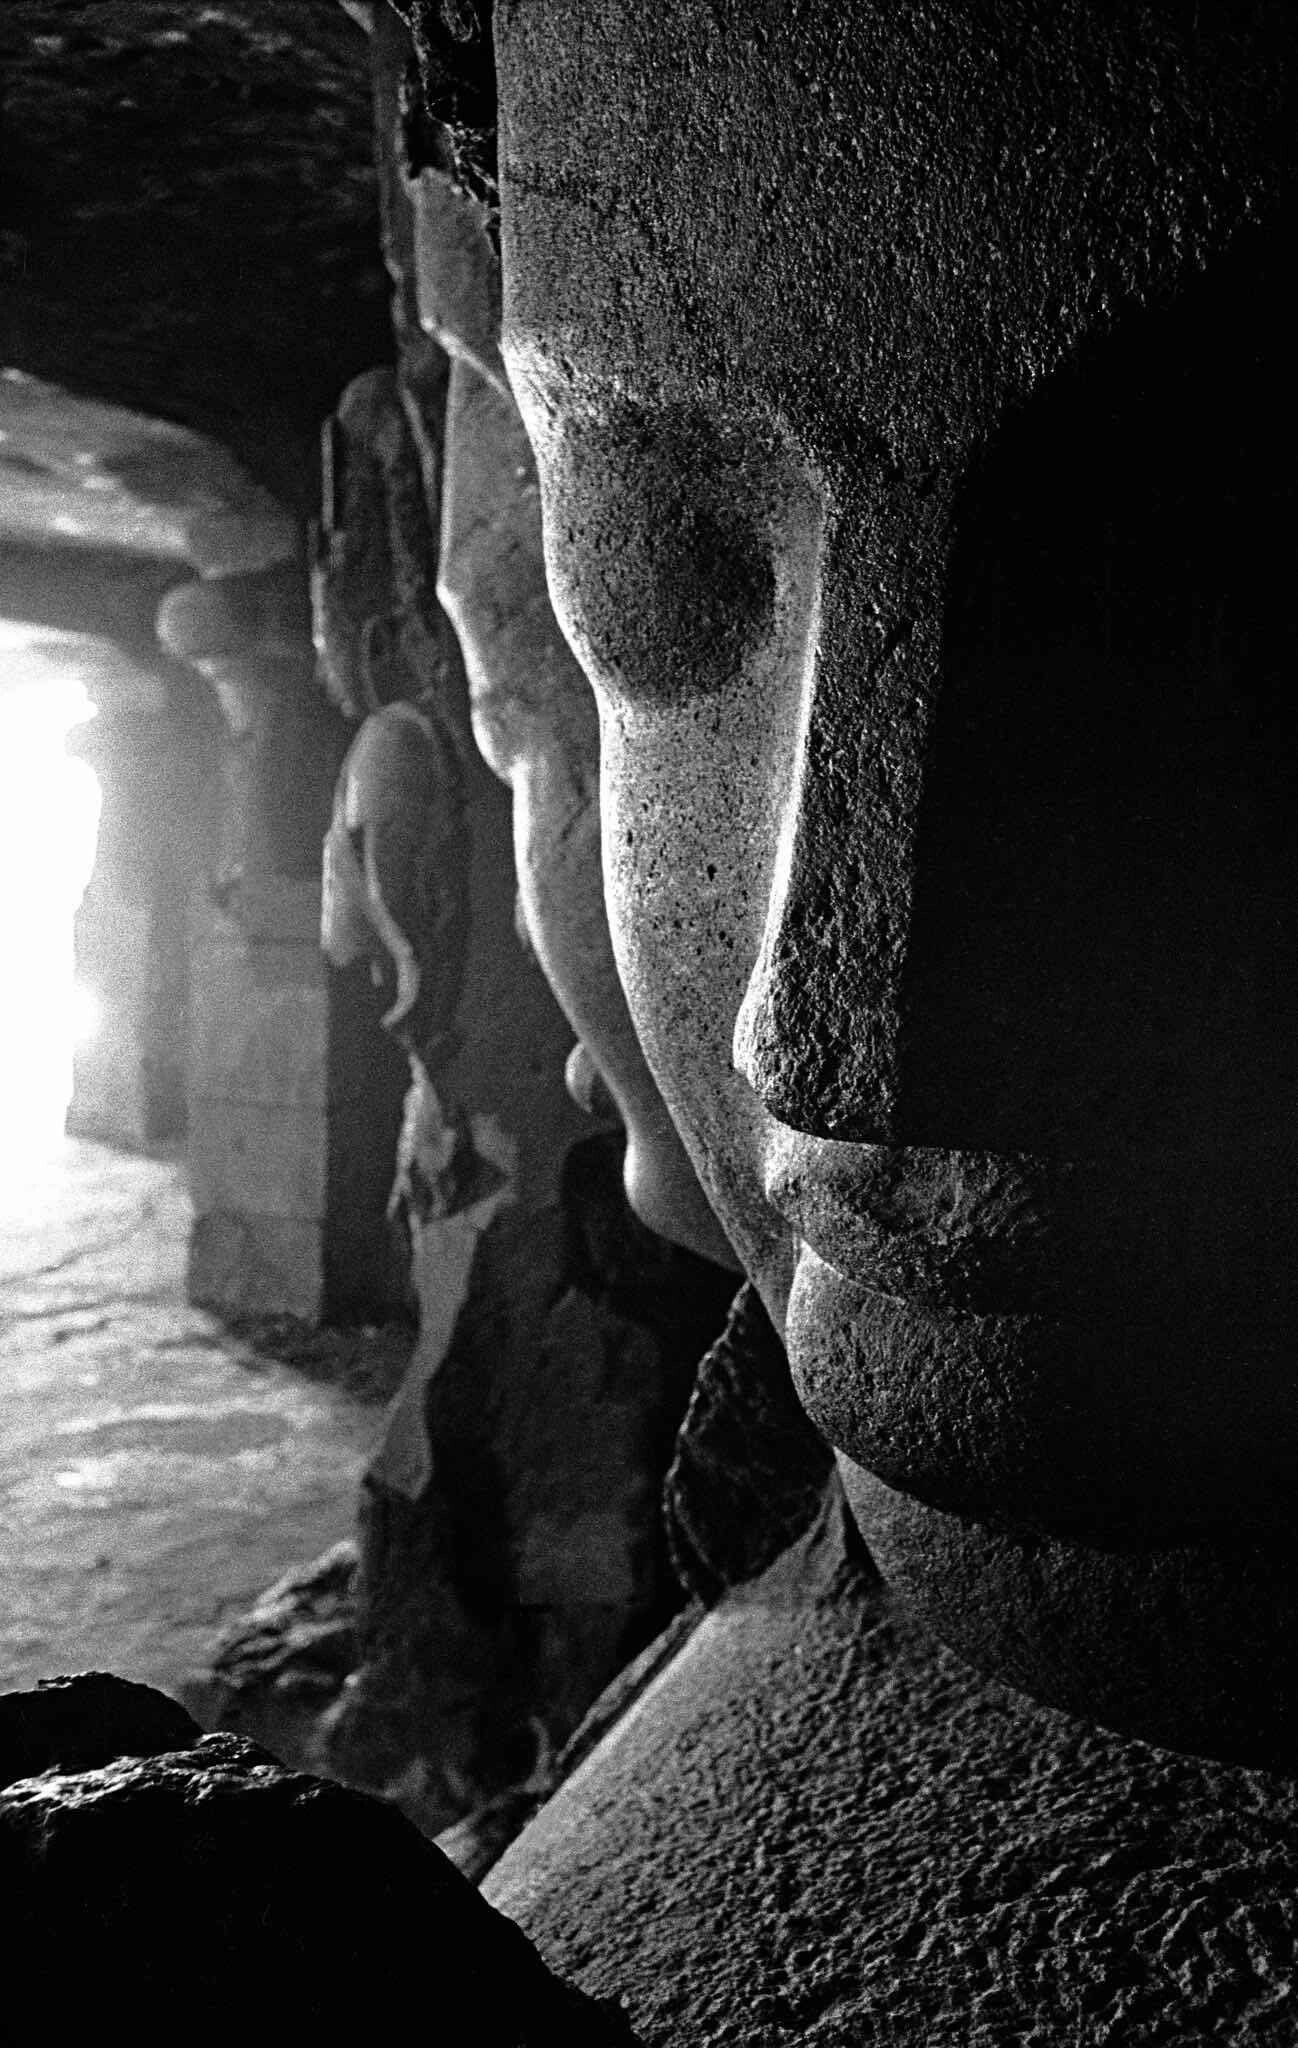 Остров Элефанта, Индия, гигантская скульптура индийской троицы, 1953 год. Фотограф Франк Хорват